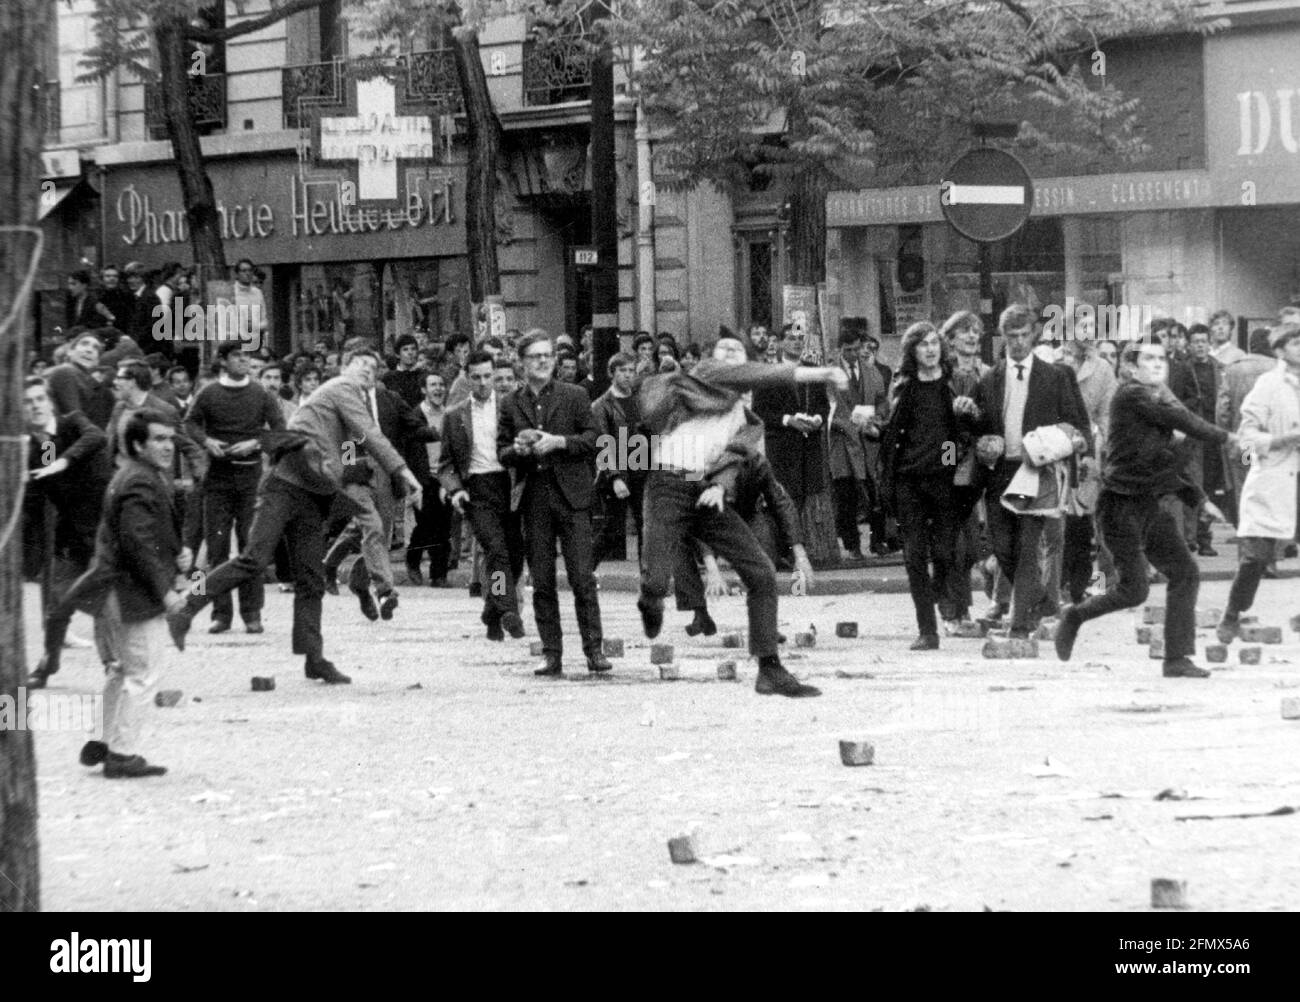 Demonstrationen, Frankreich, Paris 1968, Studentenaufstände im Quartier Latin, ZUSÄTZLICHE-RIGHTS-CLEARANCE-INFO-NOT-AVAILABLE Stockfoto